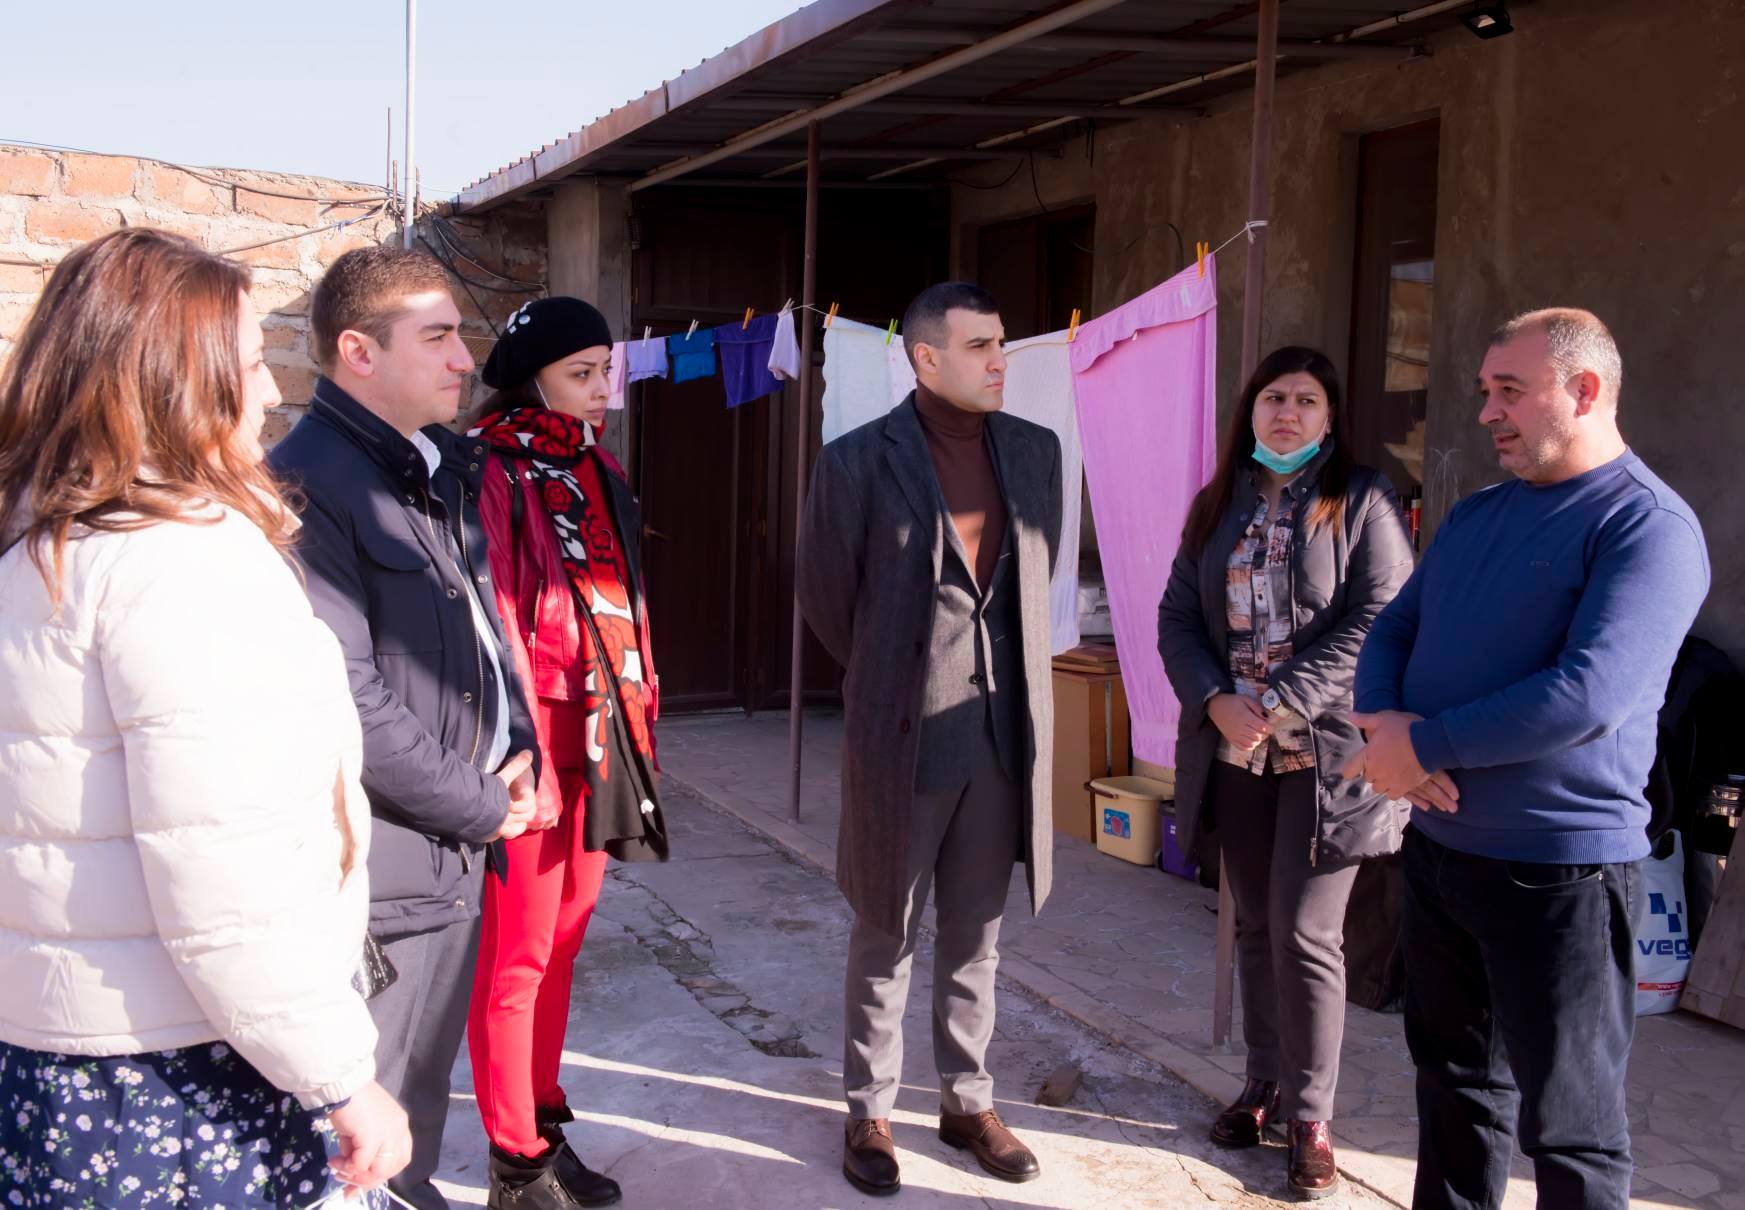 Արցախցիները Հայաստանում աջակցության կարիք ունեն. ՀԱՍԱԿ-ը հանդիպեց փախստական ընտանիքների